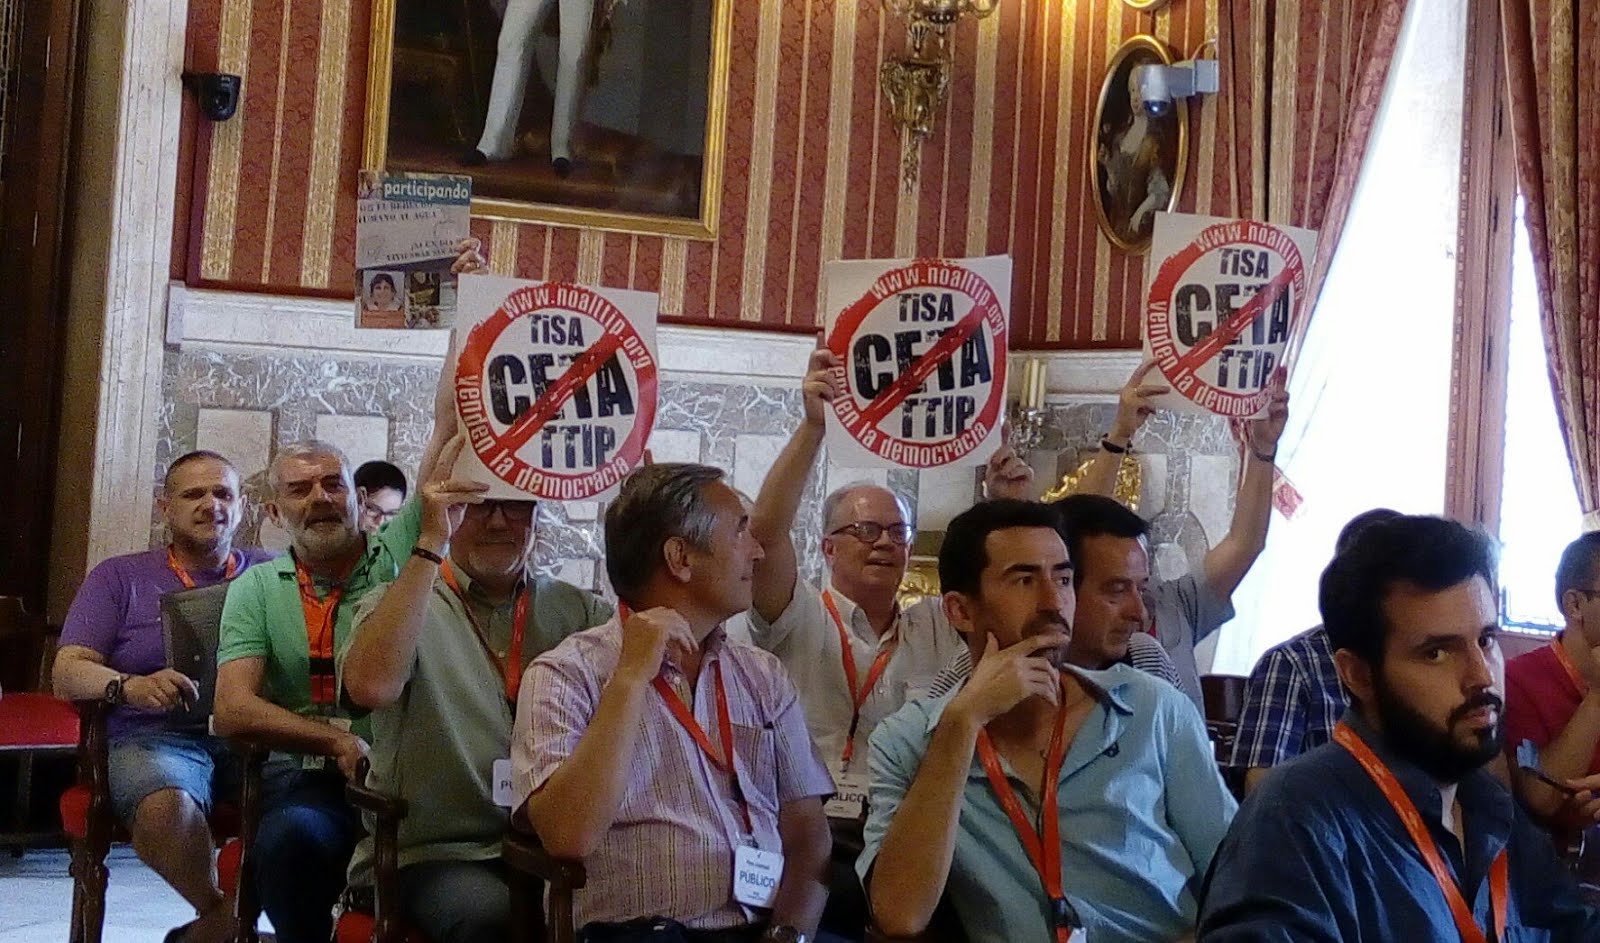 Miembros Plataforma Sevilla No al TTIP en pleno ayuntamiento en apoyo de moción contra el CETA